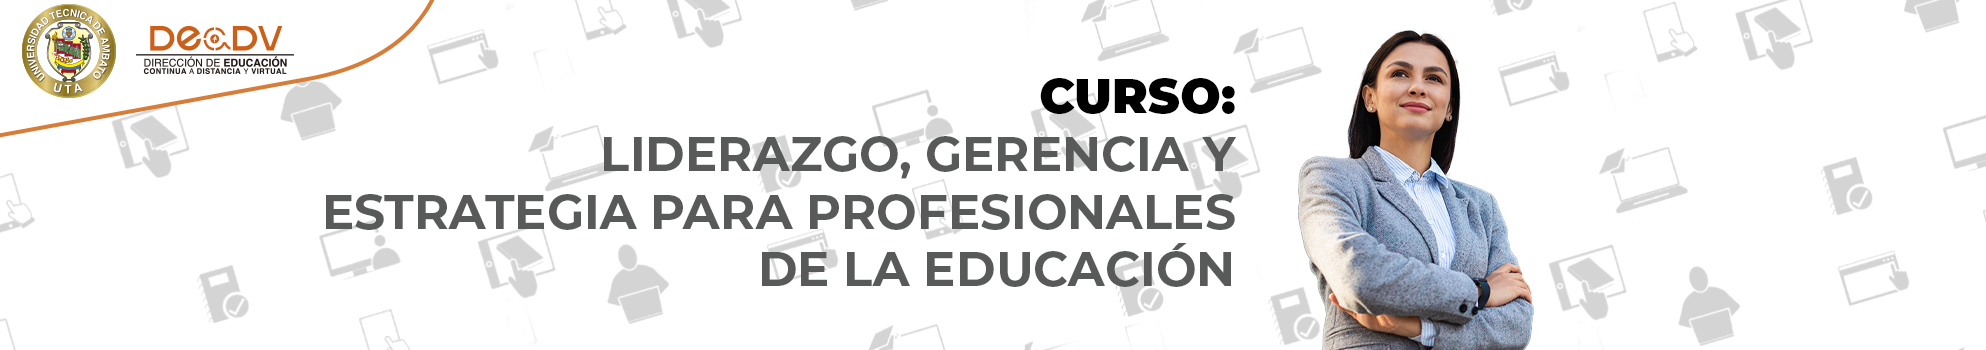 CURSO: LIDERAZGO, GERENCIA Y ESTRATEGIA PARA PROFESIONALES DE LA EDUCACIÓN